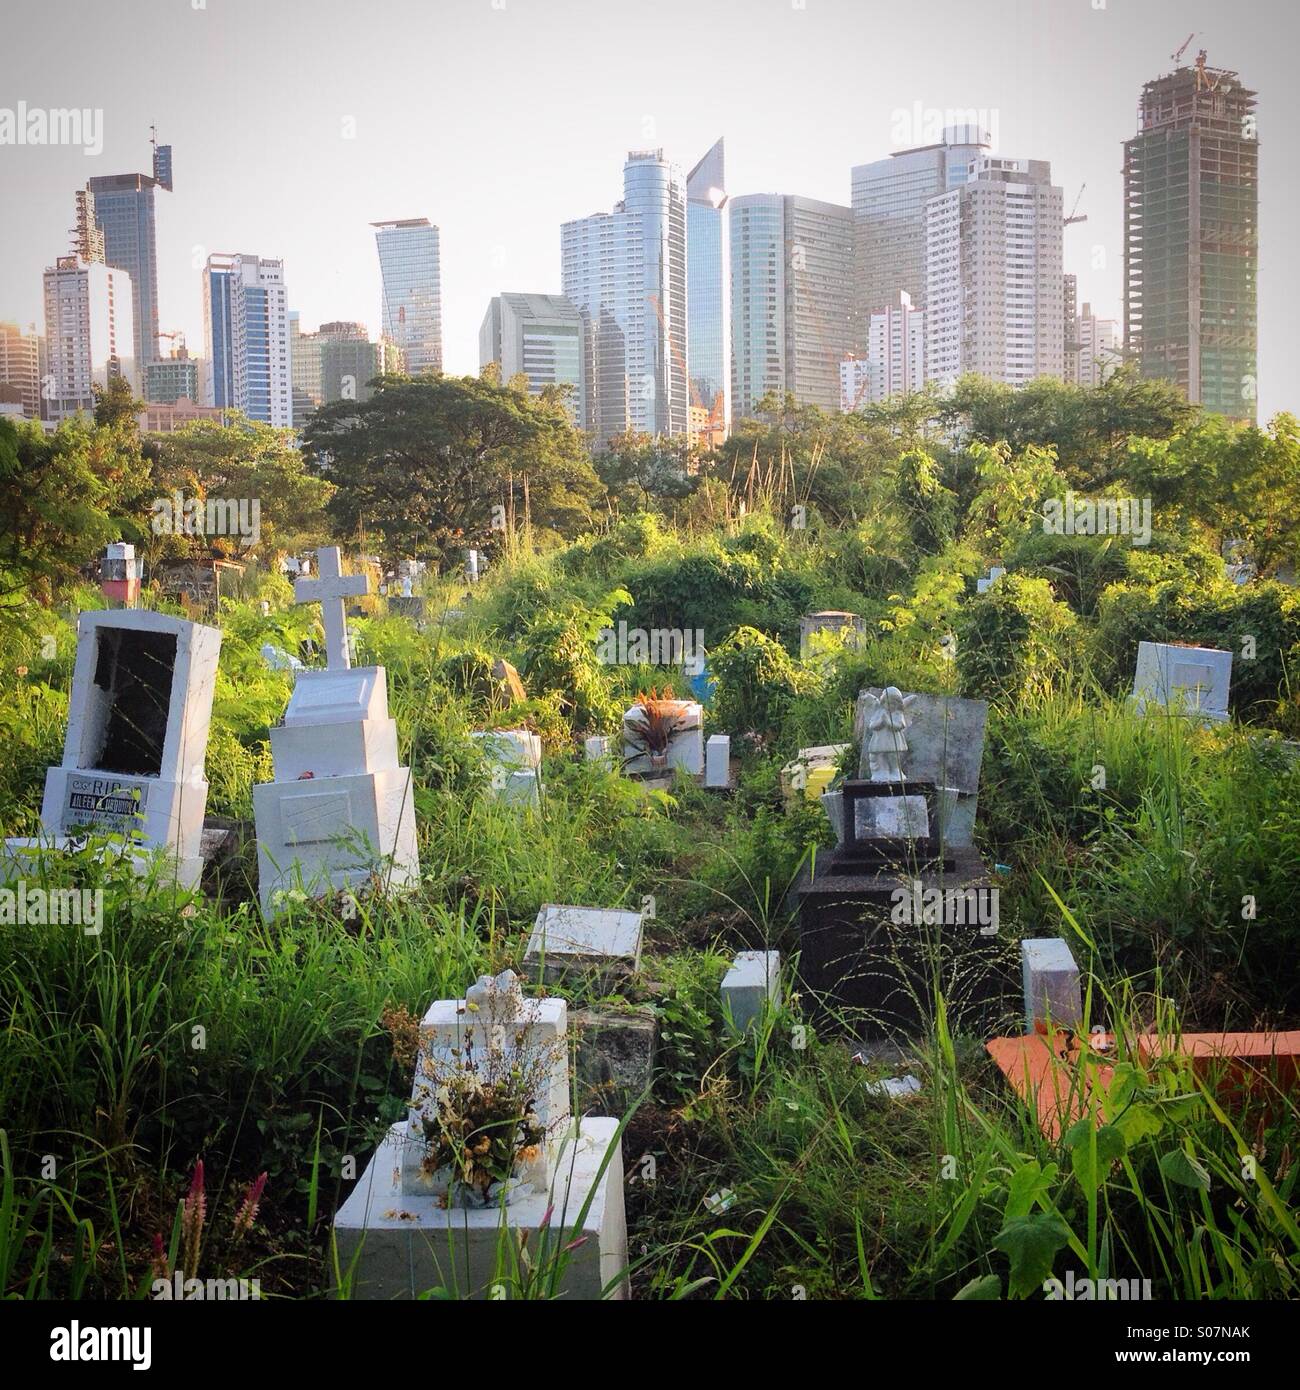 Les tombes des pauvres s'enfoncer dans le marais de Manille comme Cimetière du Sud les tours du quartier des affaires de Makati lieu derrière à quelques blocs de là. Makati, Manila, Philippines Banque D'Images